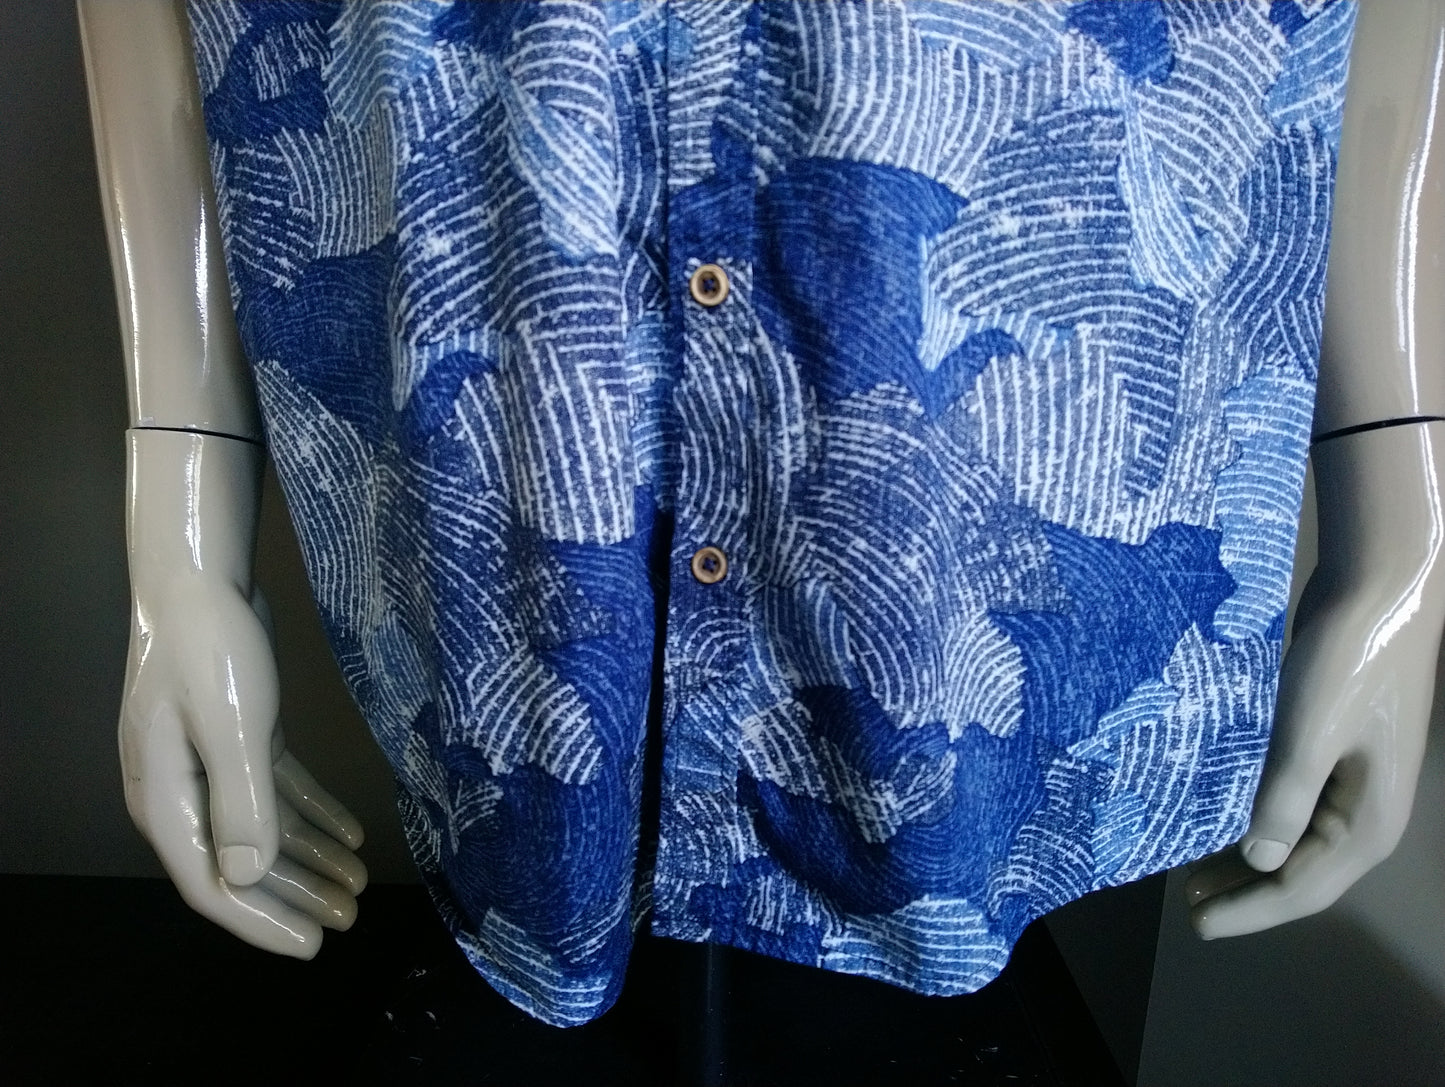 Bexleys Shirt short sleeve. Blue print. Size XL / 2XL-XXL. Regular fit.